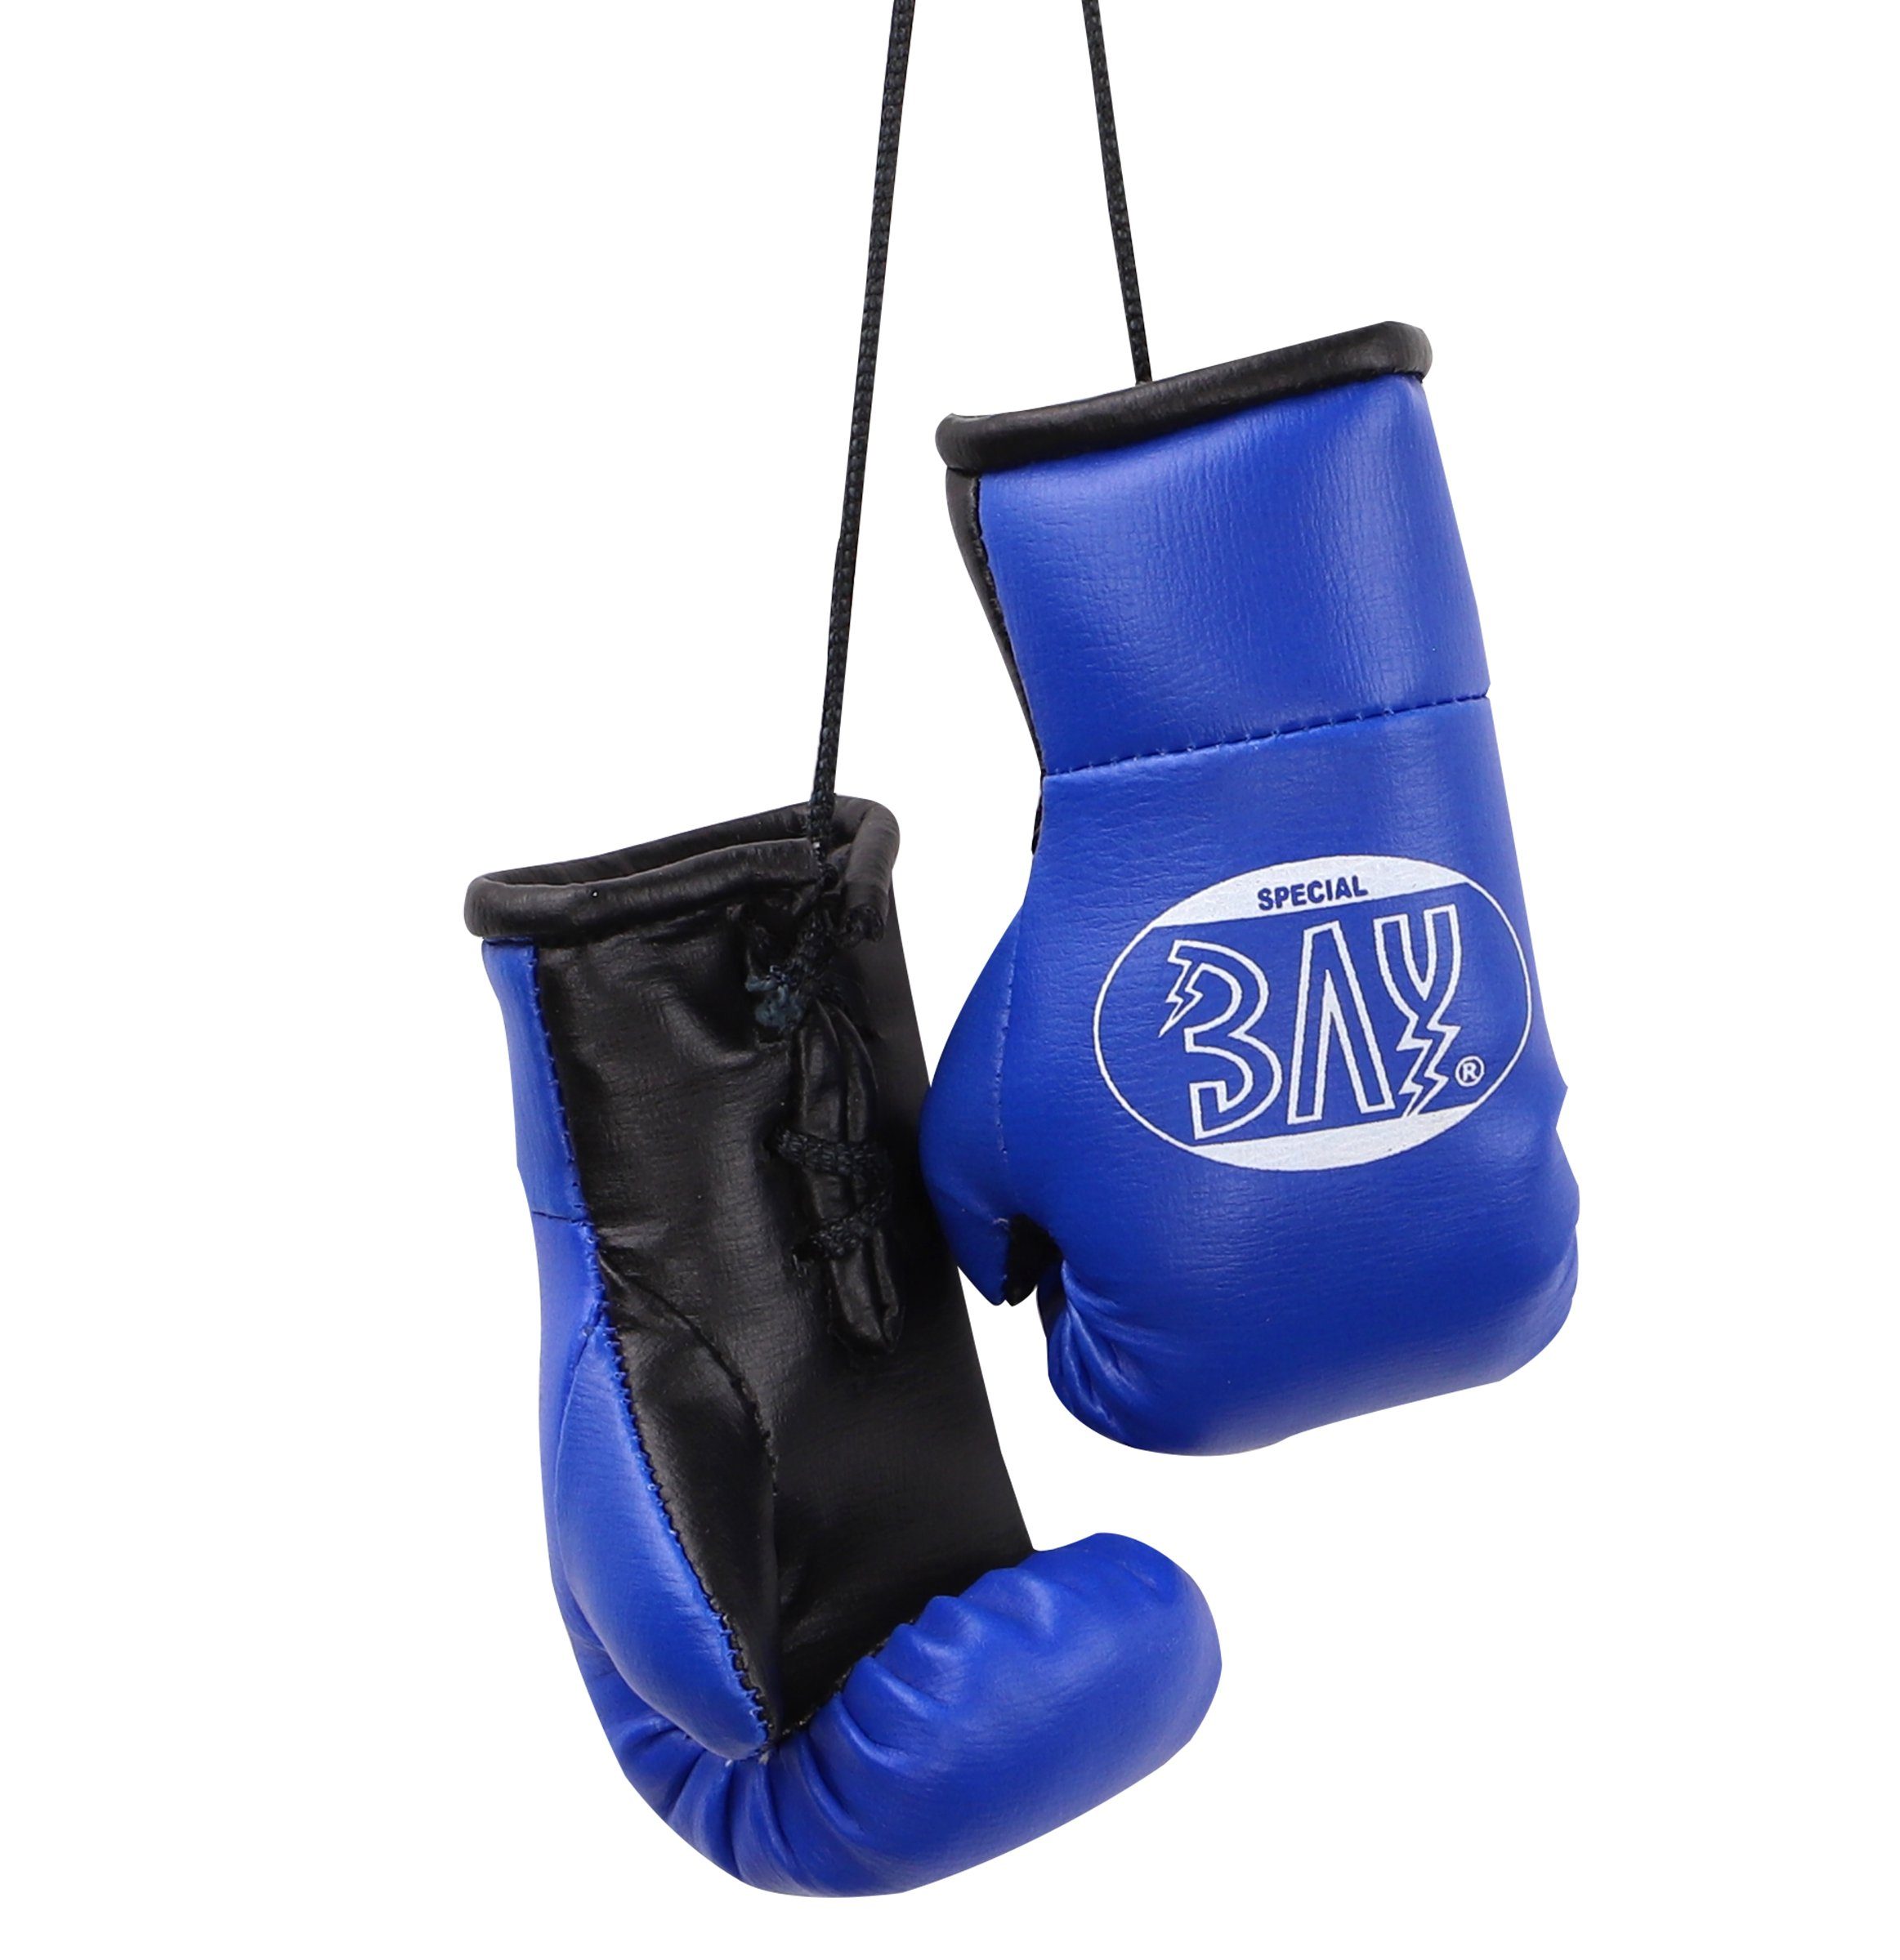 Paar für Geschenk Autospiegel Mini Box-Handschuhe Boxhandschuhe blau, Auto Tasche, BAY-Sports Anhänger Deko usw. Boxen